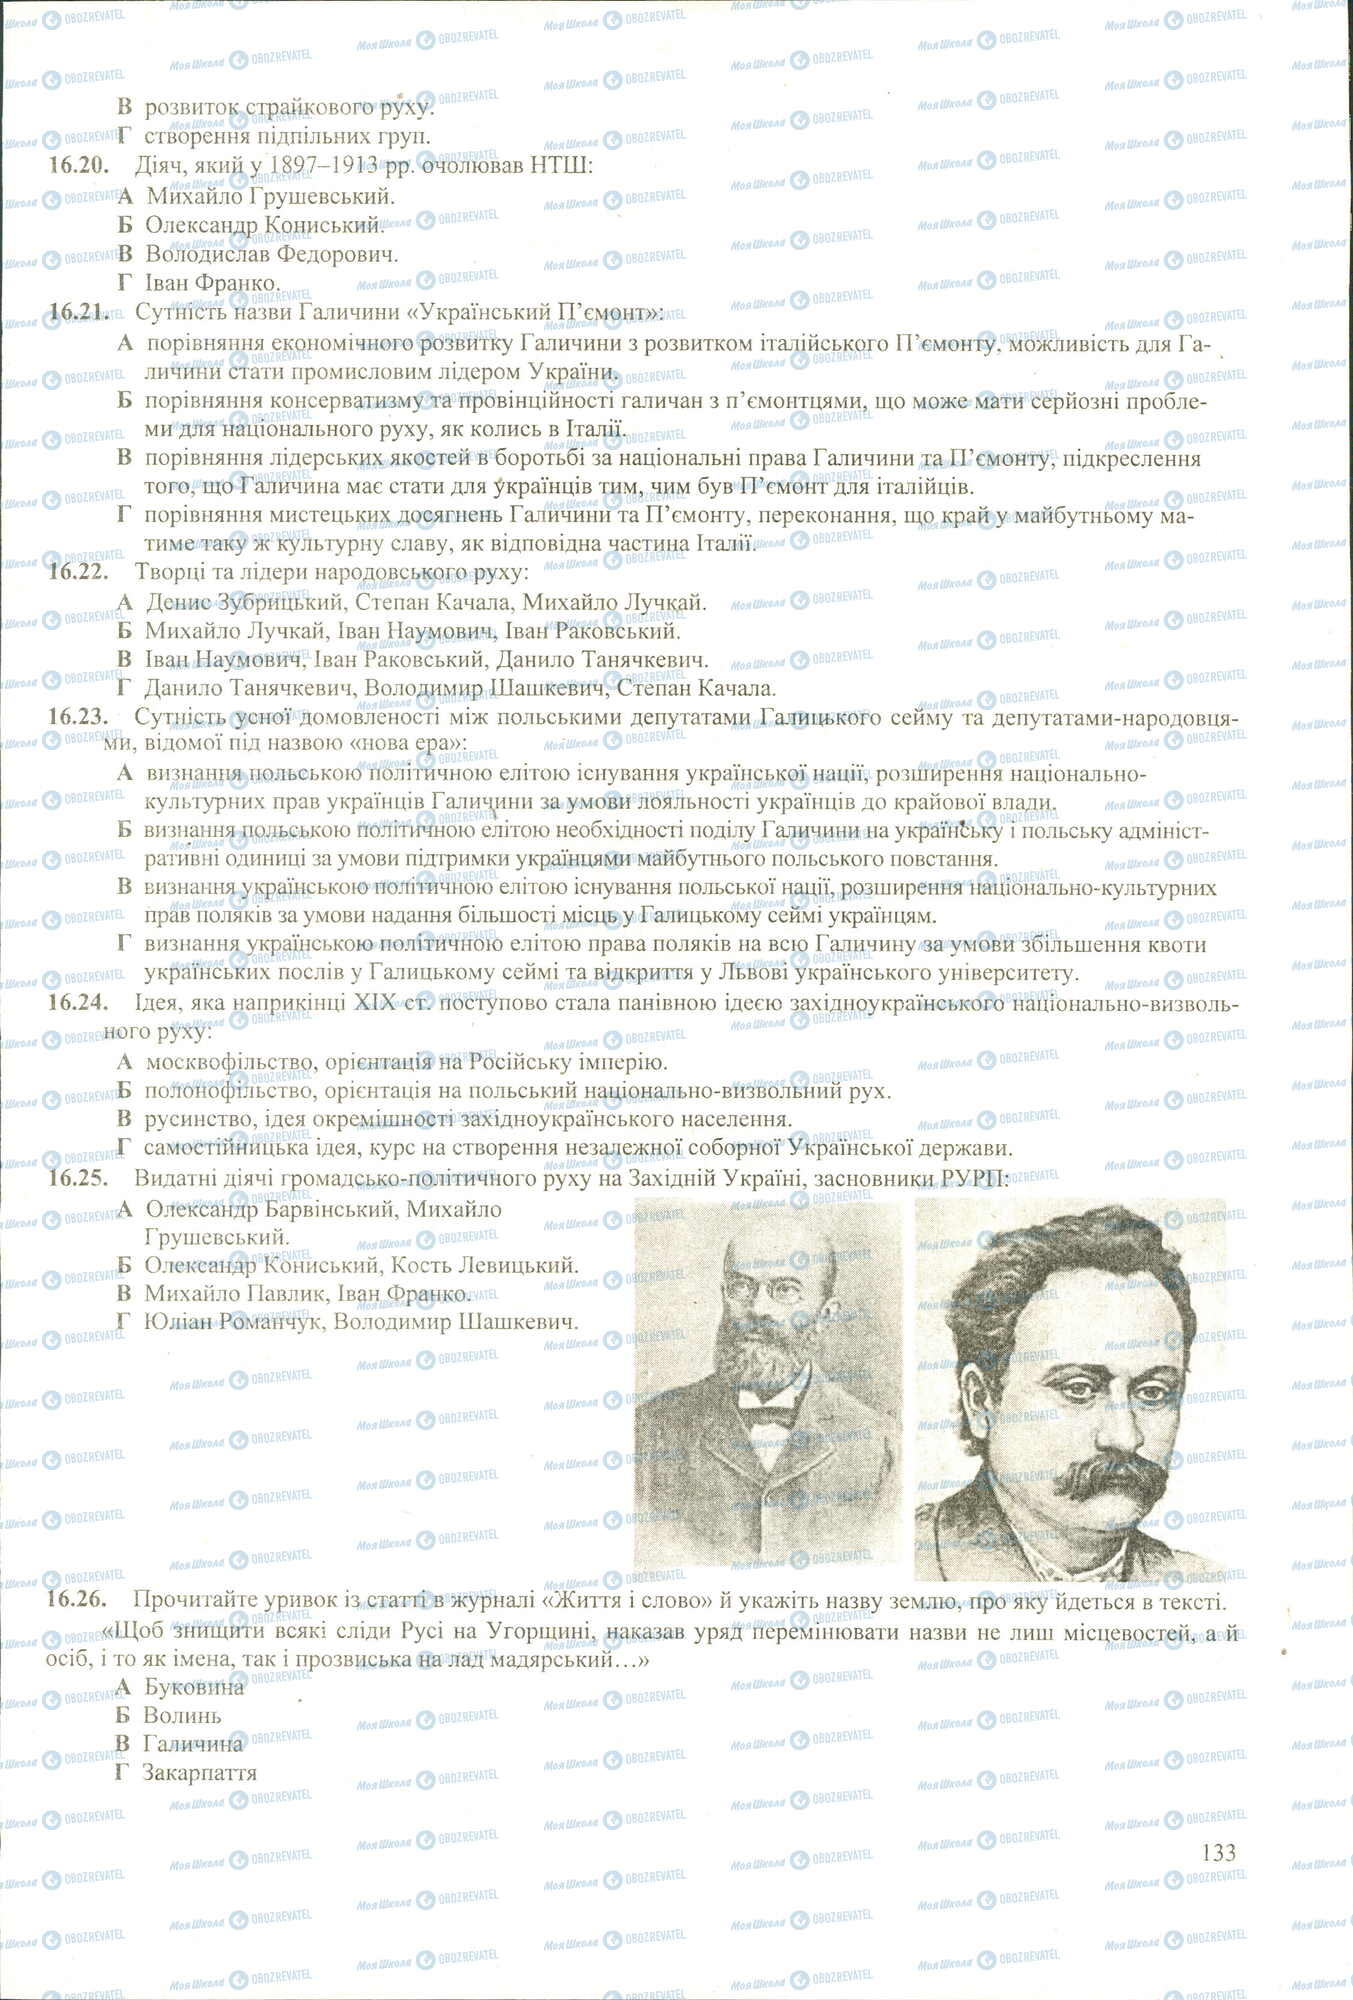 ЗНО История Украины 11 класс страница 20-26